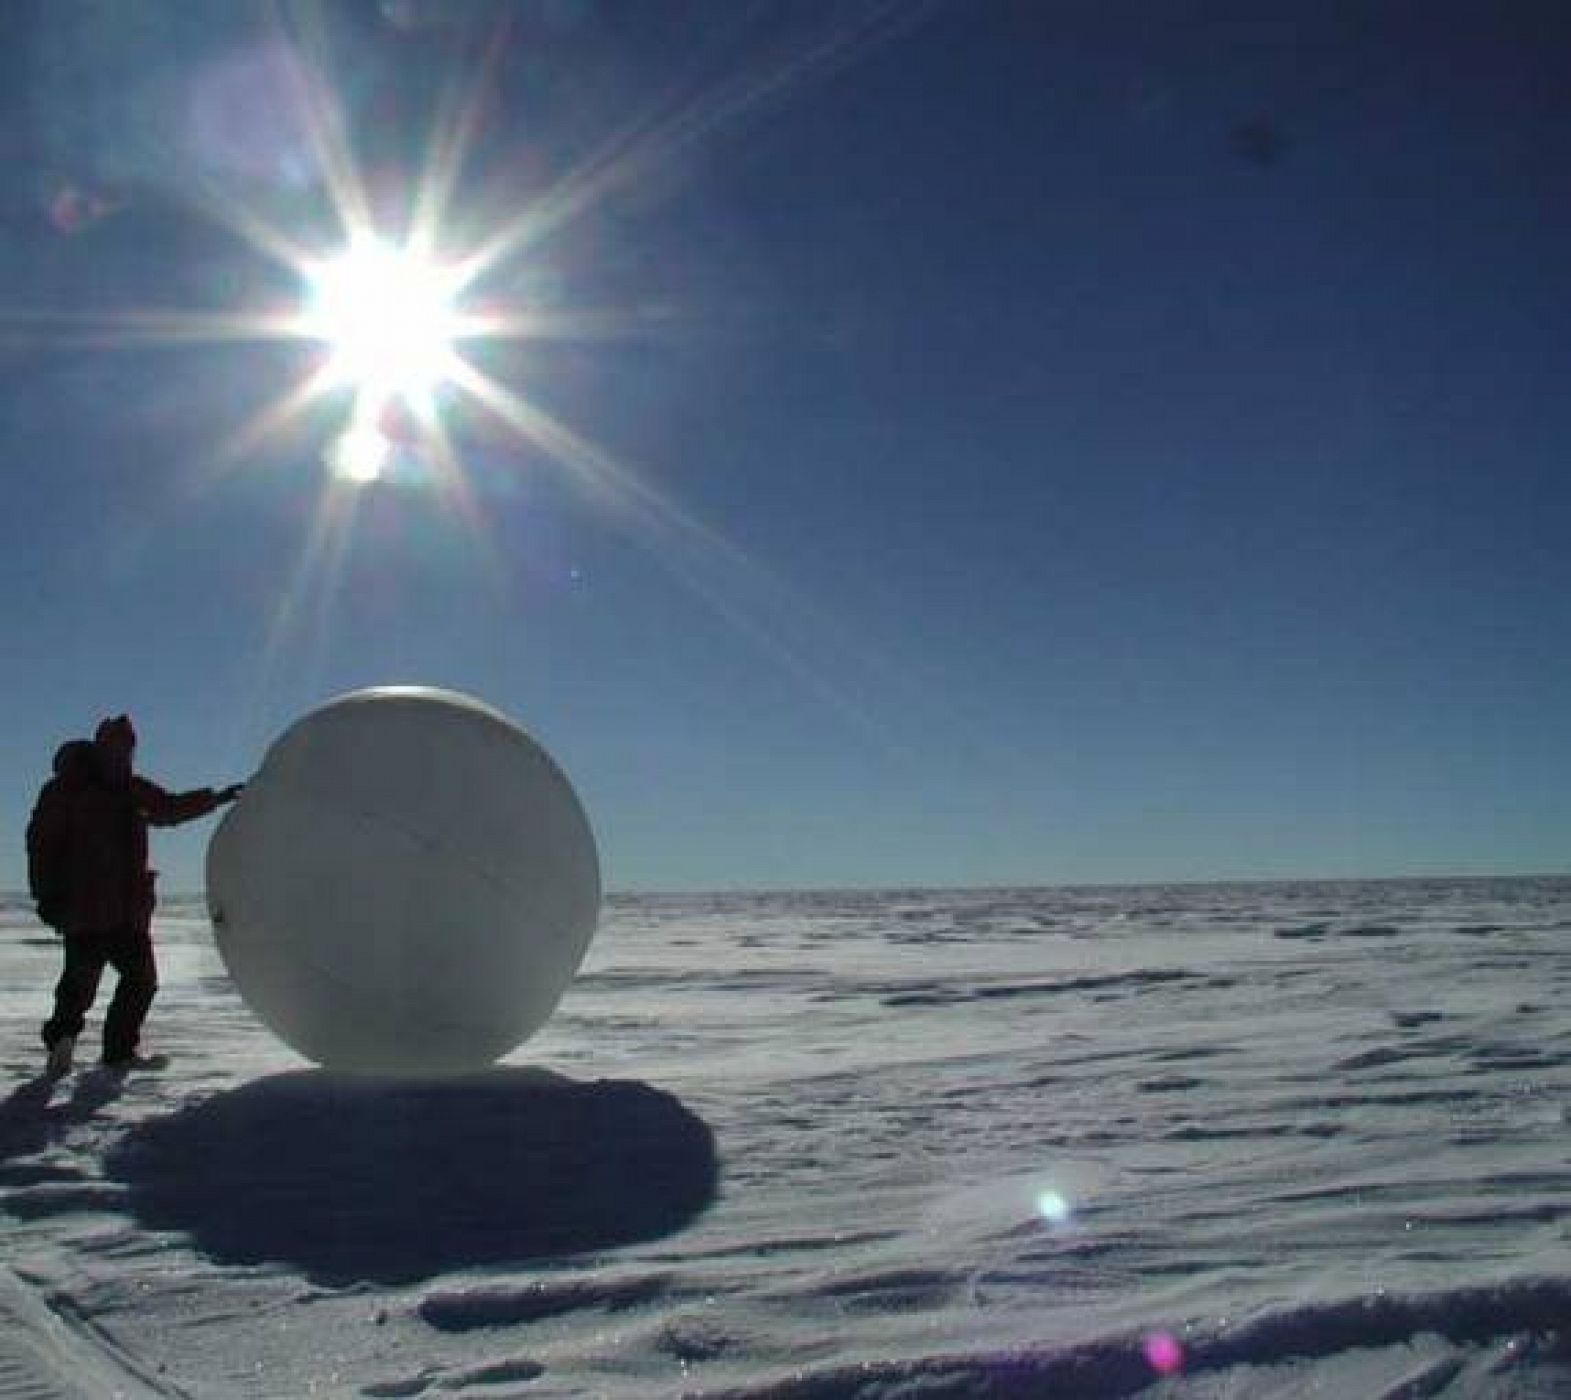 En 2004 un prototipo de este tipo de "bolas" recorrió 70 kilómetros por la Antártida en ocho días recogiendo y enviando datos